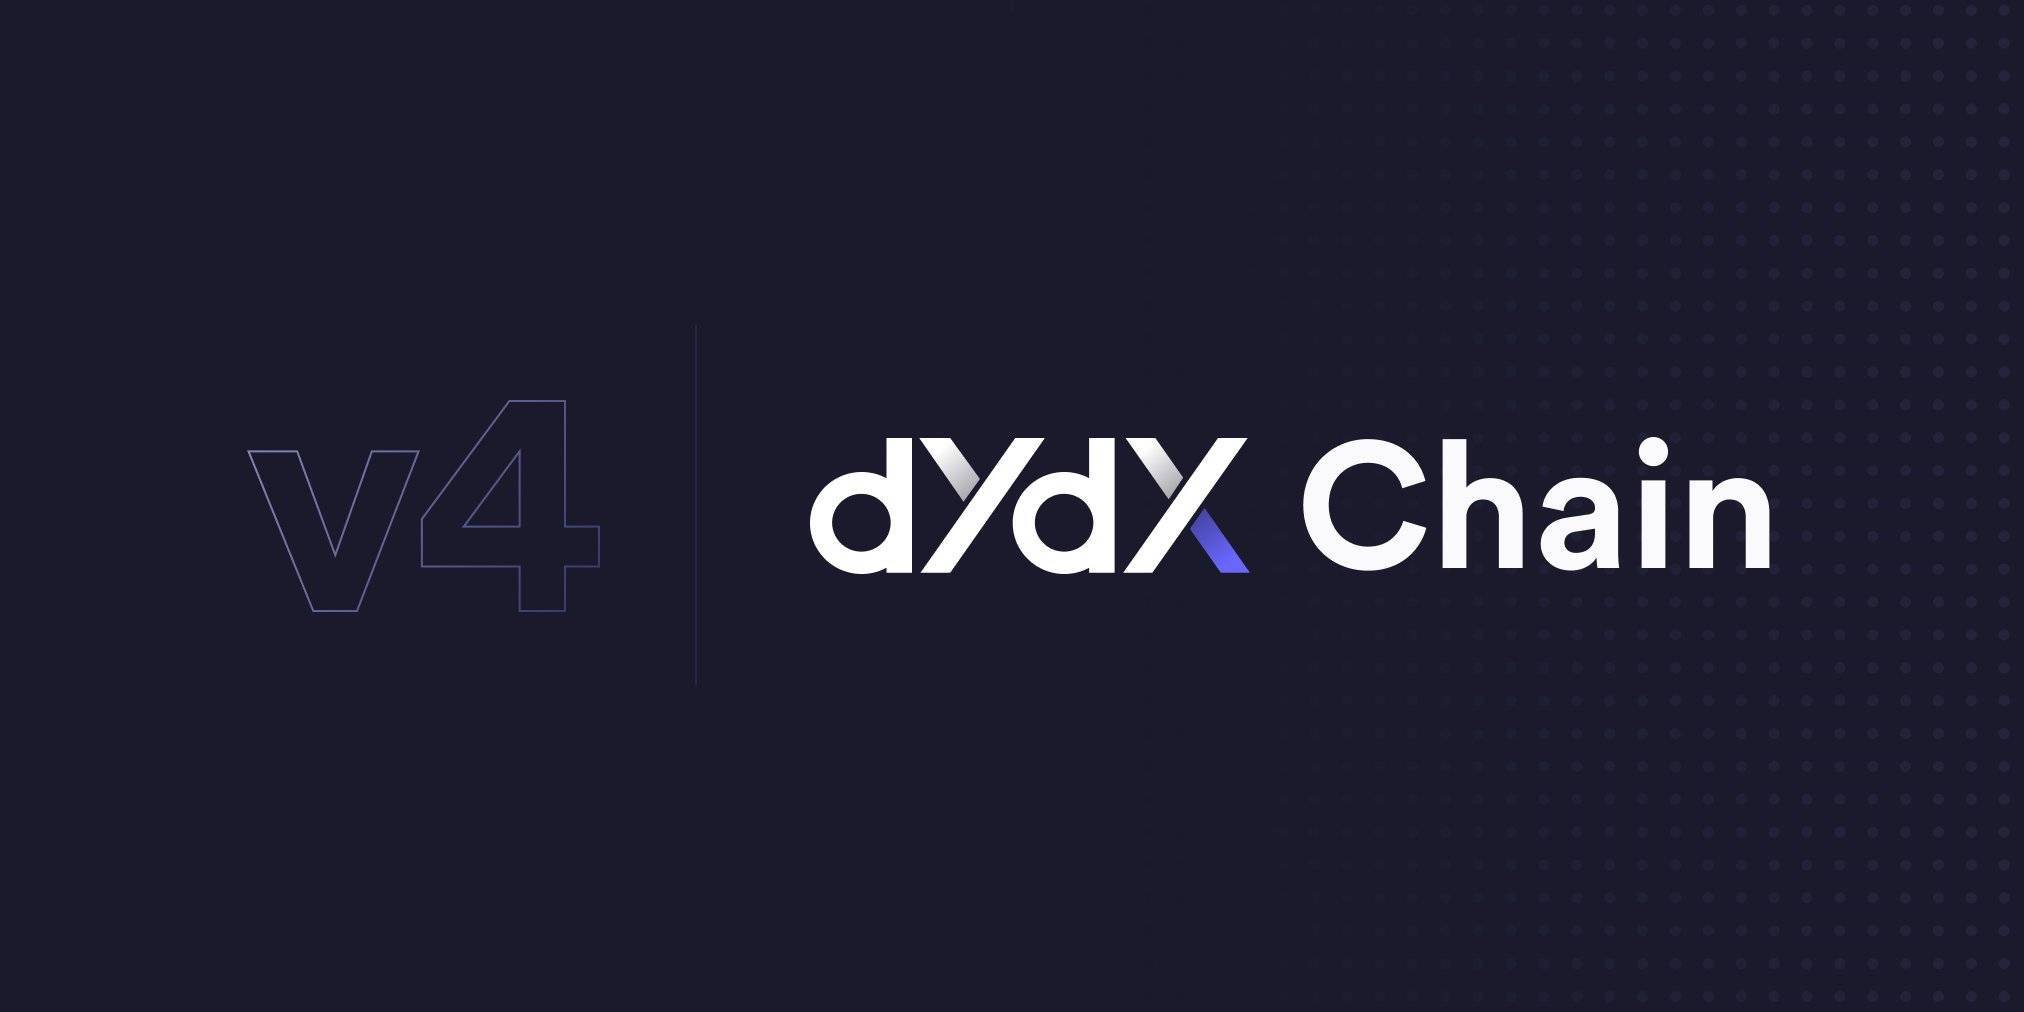 Dydx Thông Qua Đề Xuất Nâng Cấp Lên V4 Chuyển Dydx Thành Token Của Dydx Chain